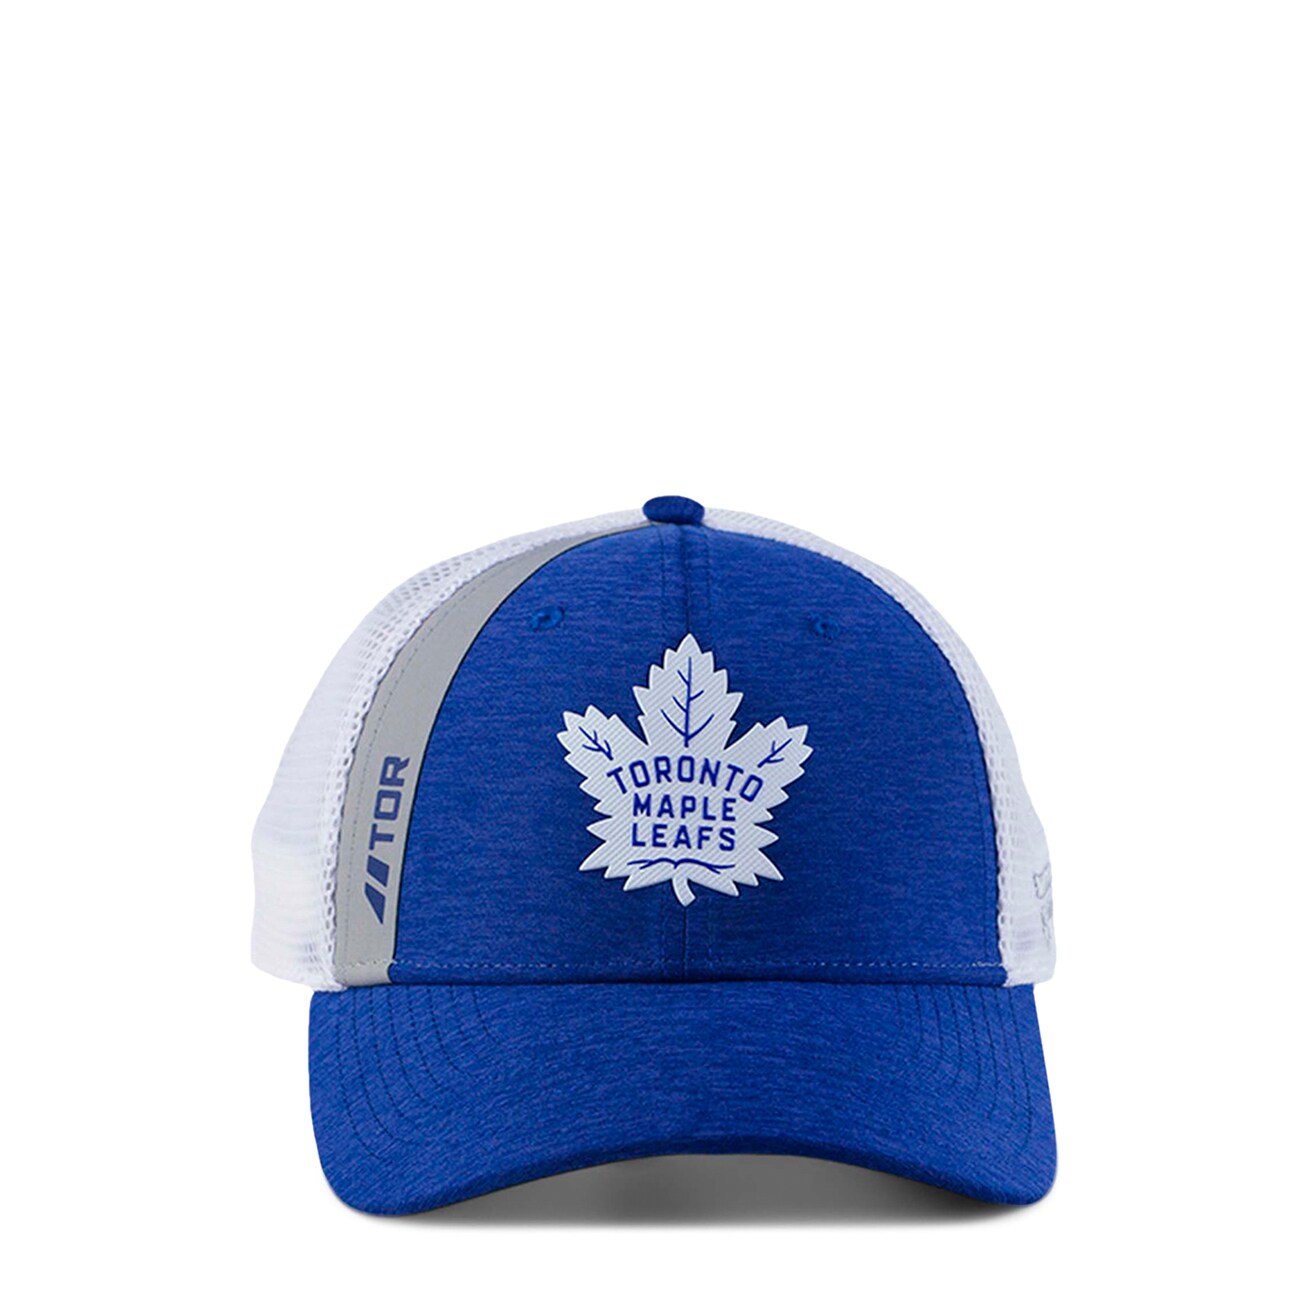 Fanatics Branded Men's Toronto Maple Leafs 20 Nhl Locker Room Trucker Cap in Light Navy Blue